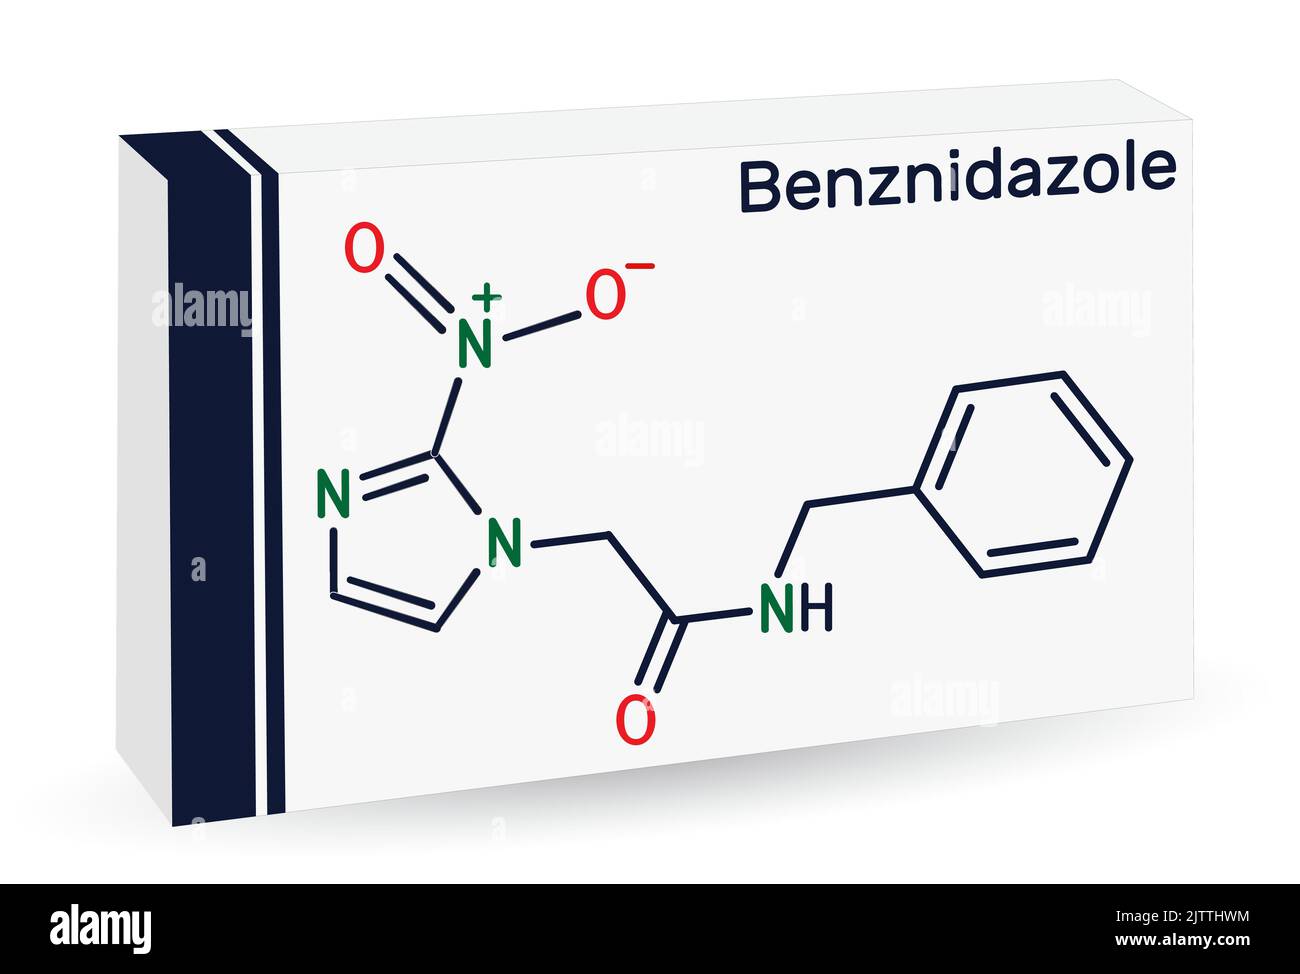 Benznidazol-Molekül. Es ist ein parasitäres Medikament, das bei der Behandlung der Chagas-Krankheit verwendet wird. Chemische Formel des Skeletts. Papierverpackungen für Medikamente. Vektor Stock Vektor